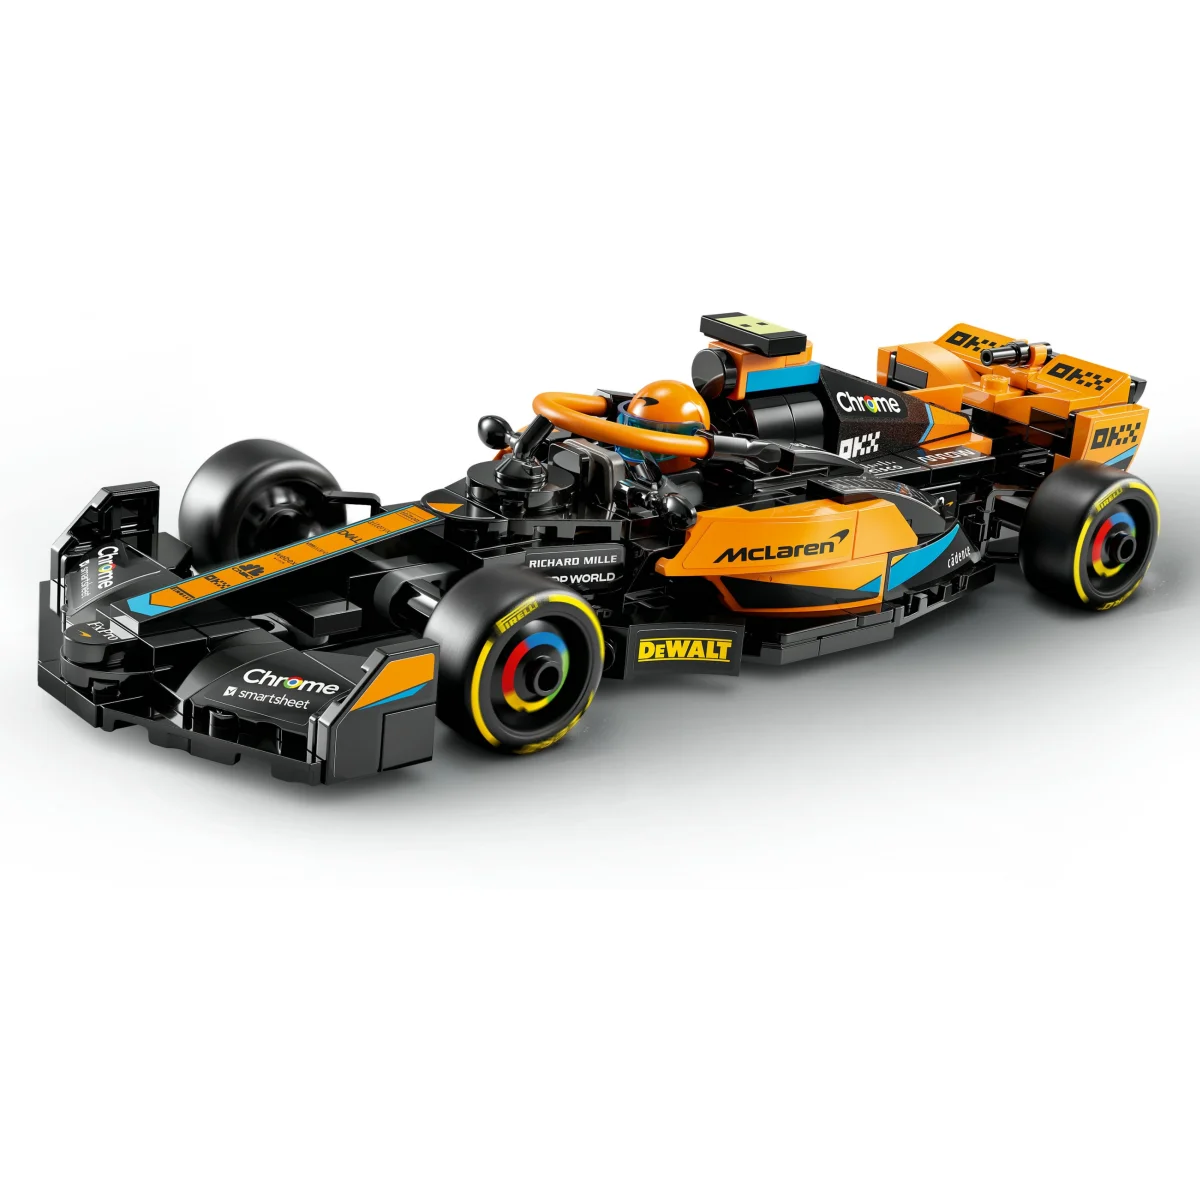 LEGO® Speed Champions McLaren Formel-1 Rennwagen 2023 76919